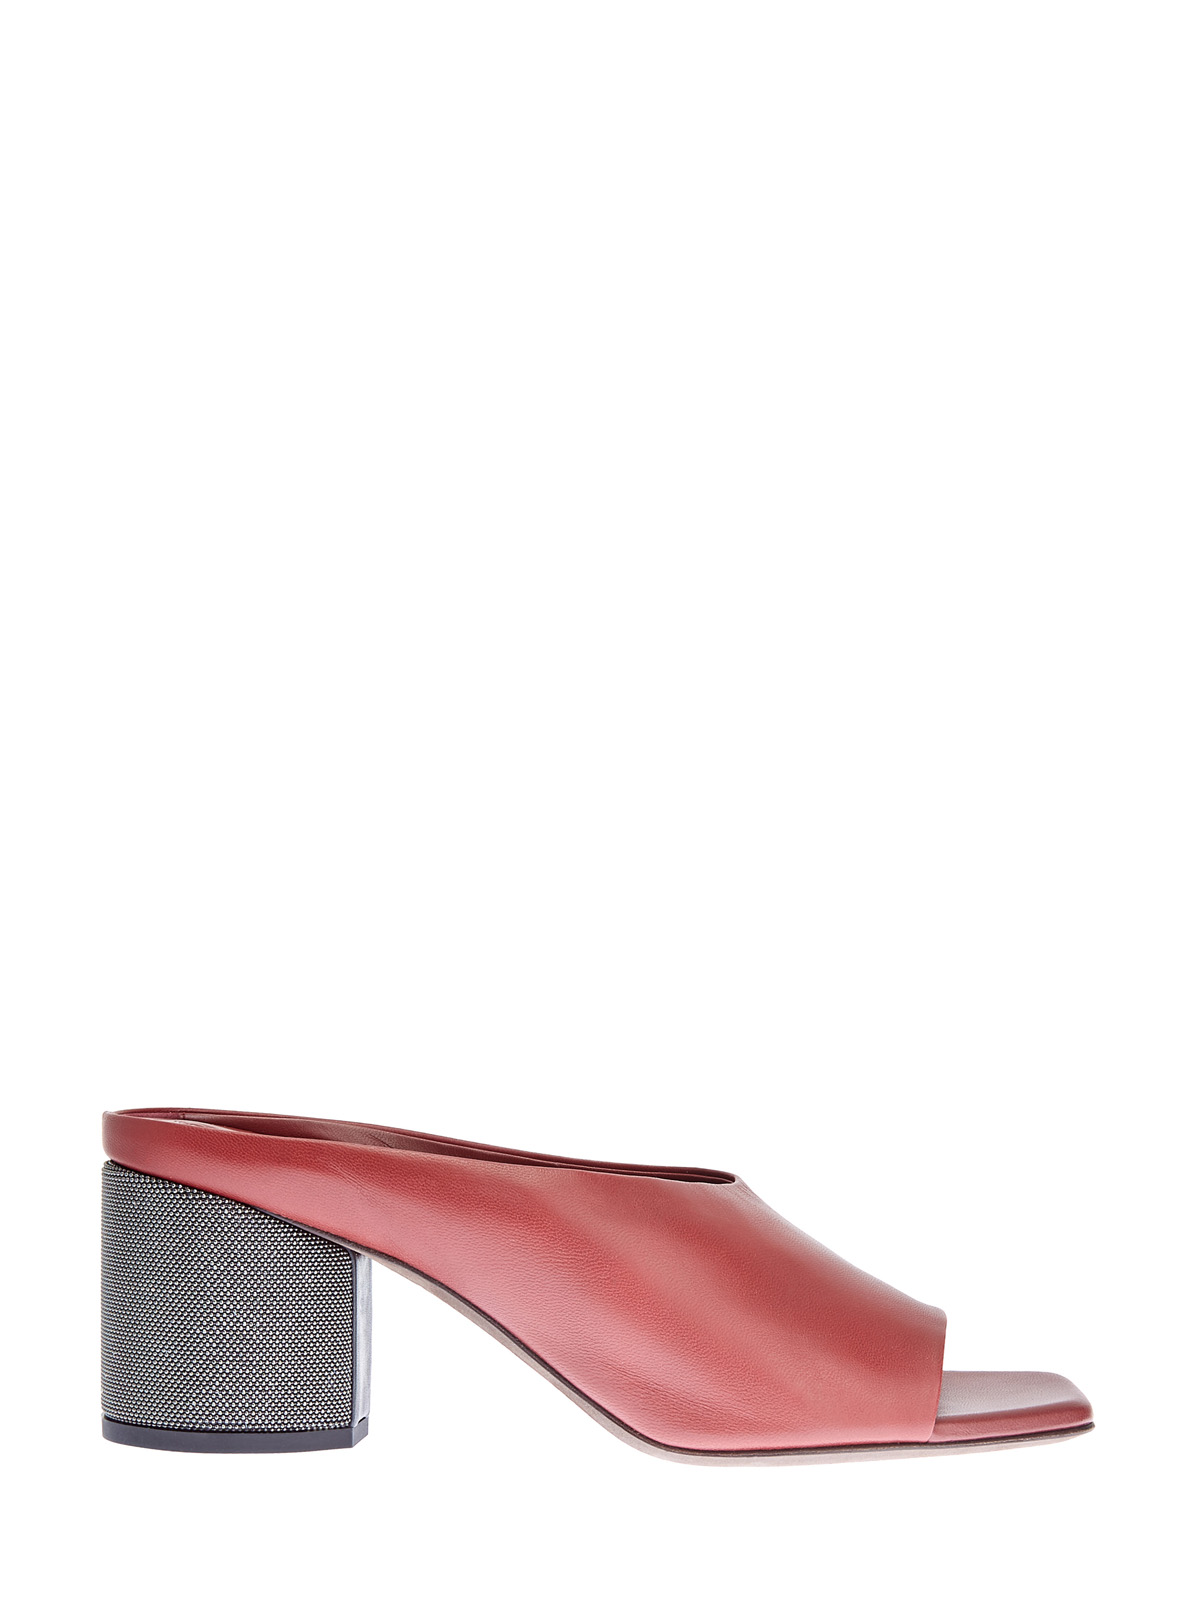 Мюли из гладкой кожи с ювелирной отделкой каблука BRUNELLO CUCINELLI, цвет красный, размер 36.5;37.5;38.5;39.5 - фото 1